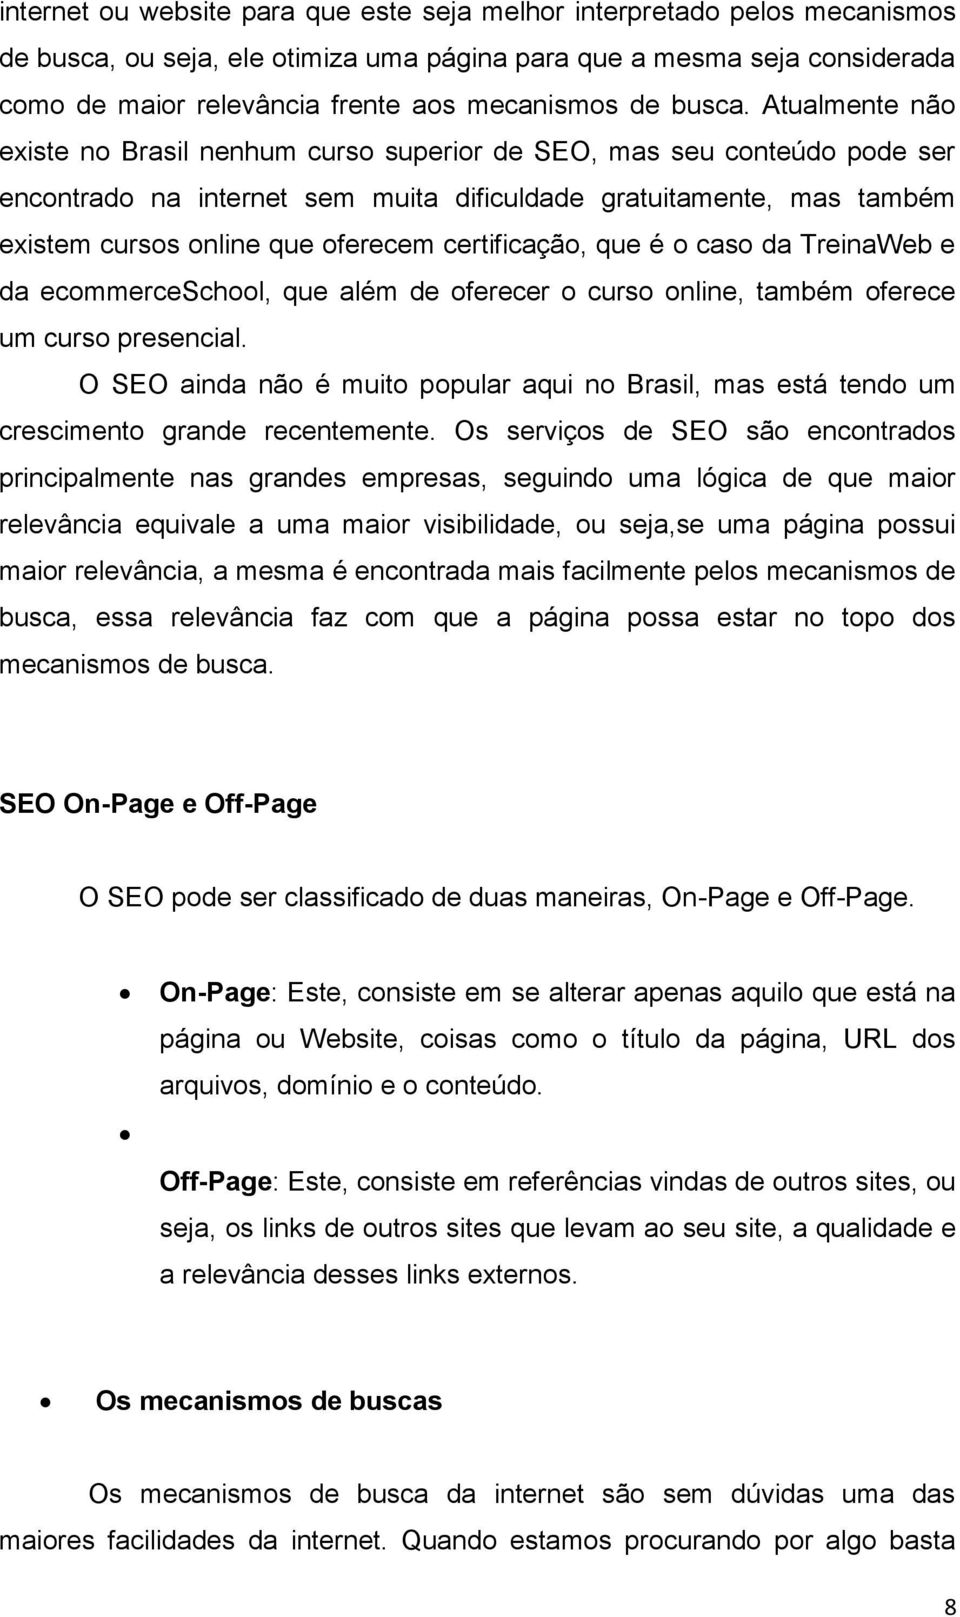 Atualmente não existe no Brasil nenhum curso superior de SEO, mas seu conteúdo pode ser encontrado na internet sem muita dificuldade gratuitamente, mas também existem cursos online que oferecem